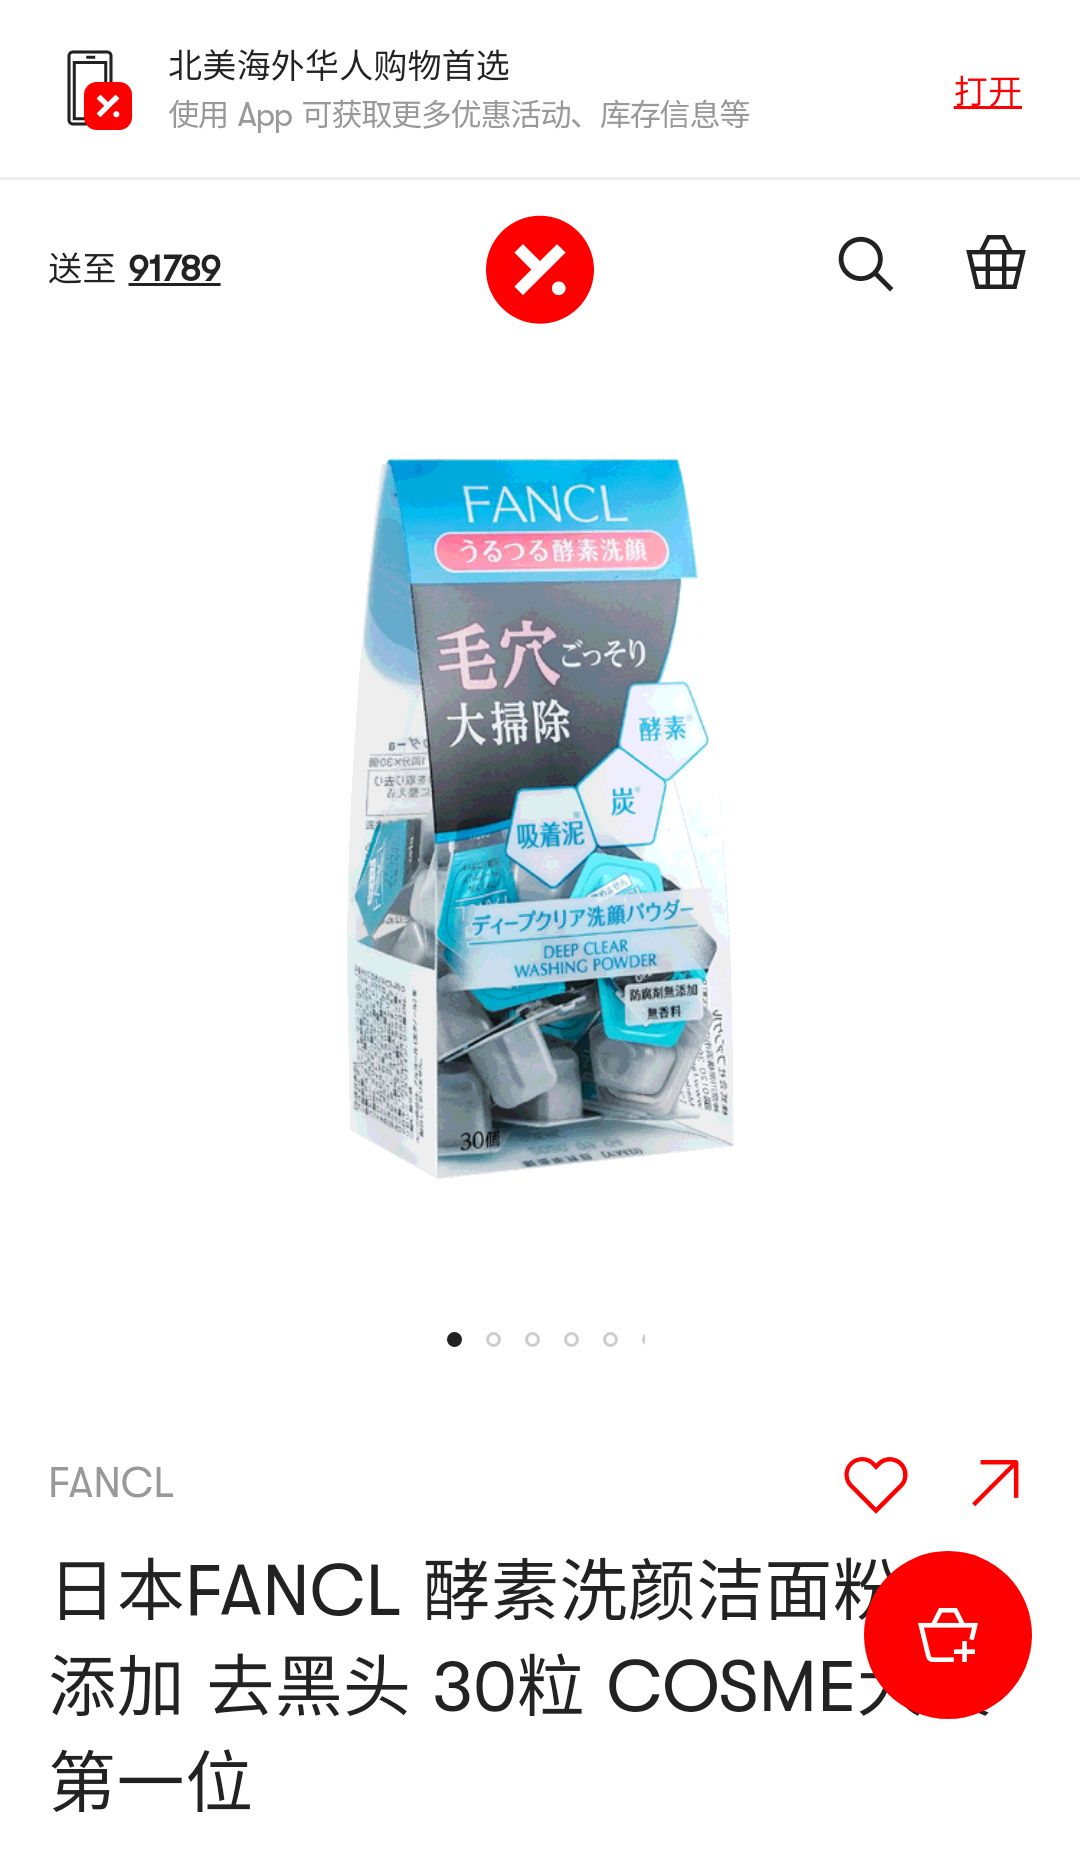 日本FANCL 酵素洗颜洁面粉 无添加 去黑头 30粒 COSME大赏第一位 - 亚米